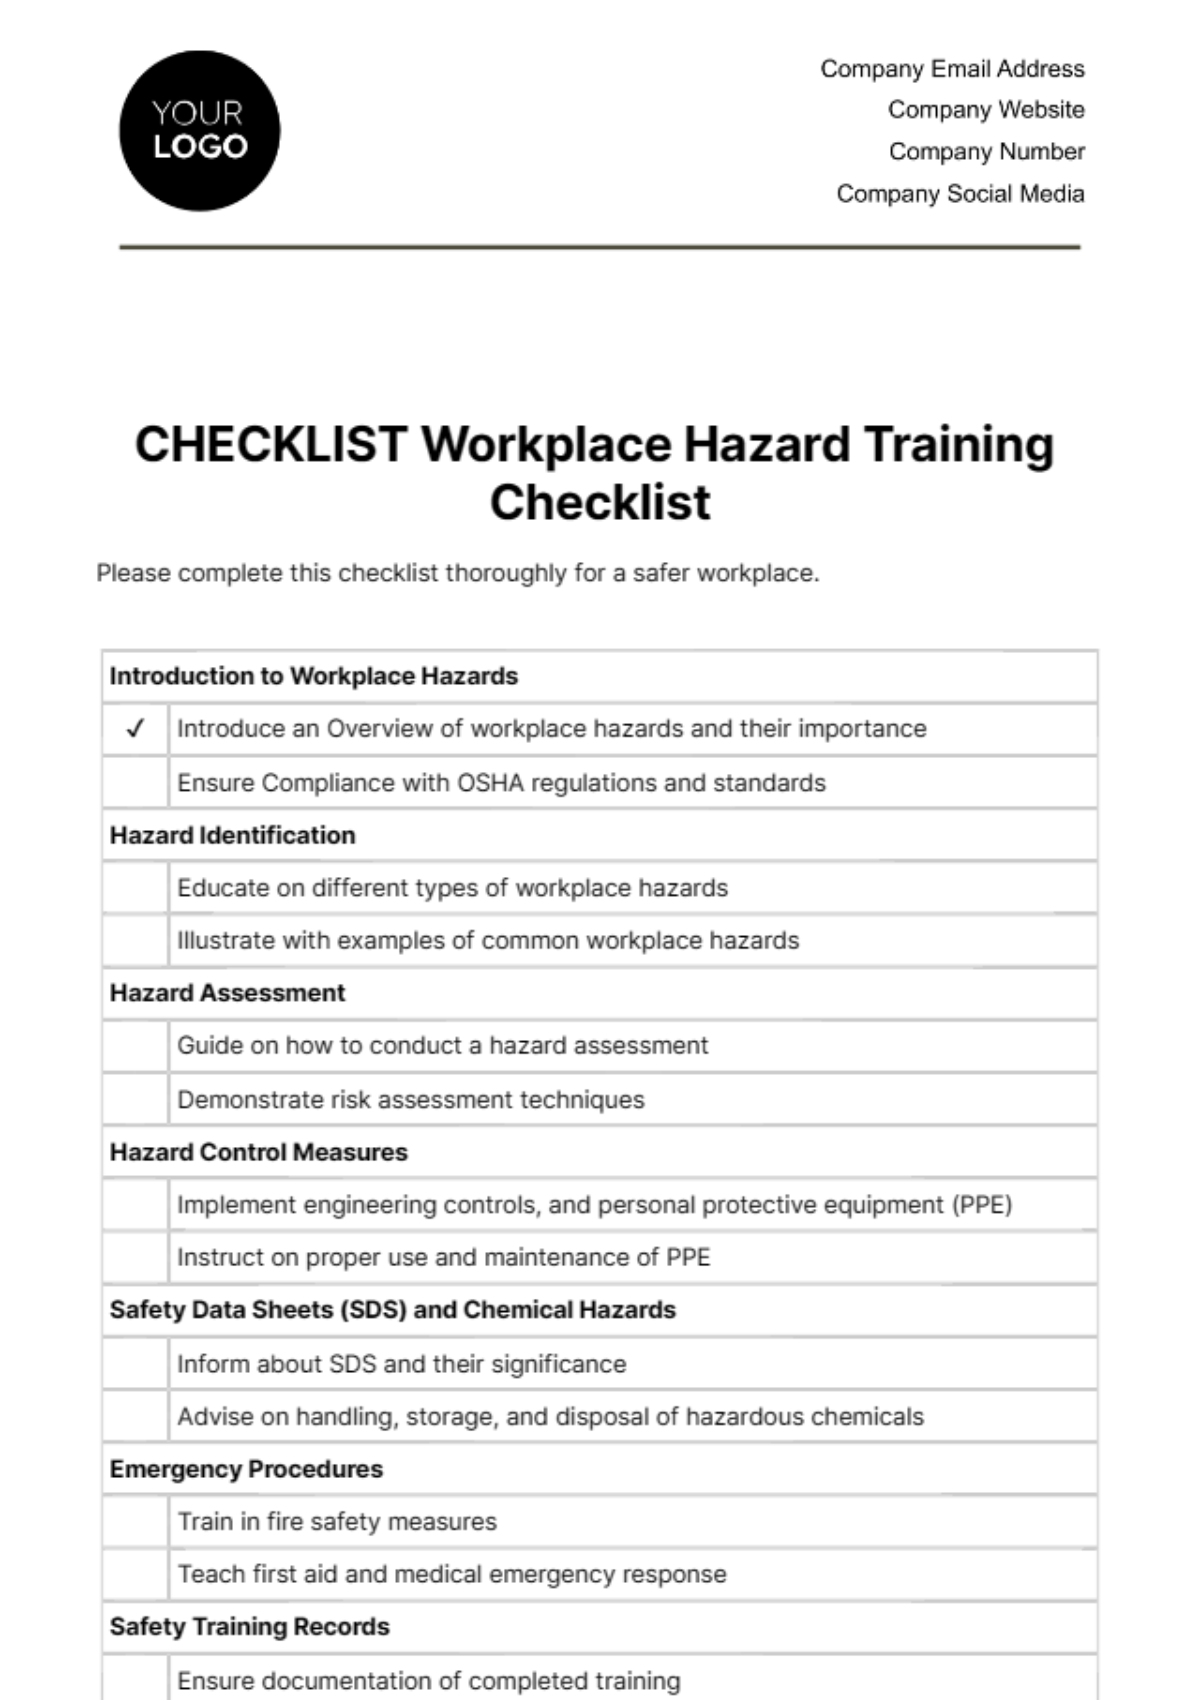 Workplace Hazard Training Checklist Template